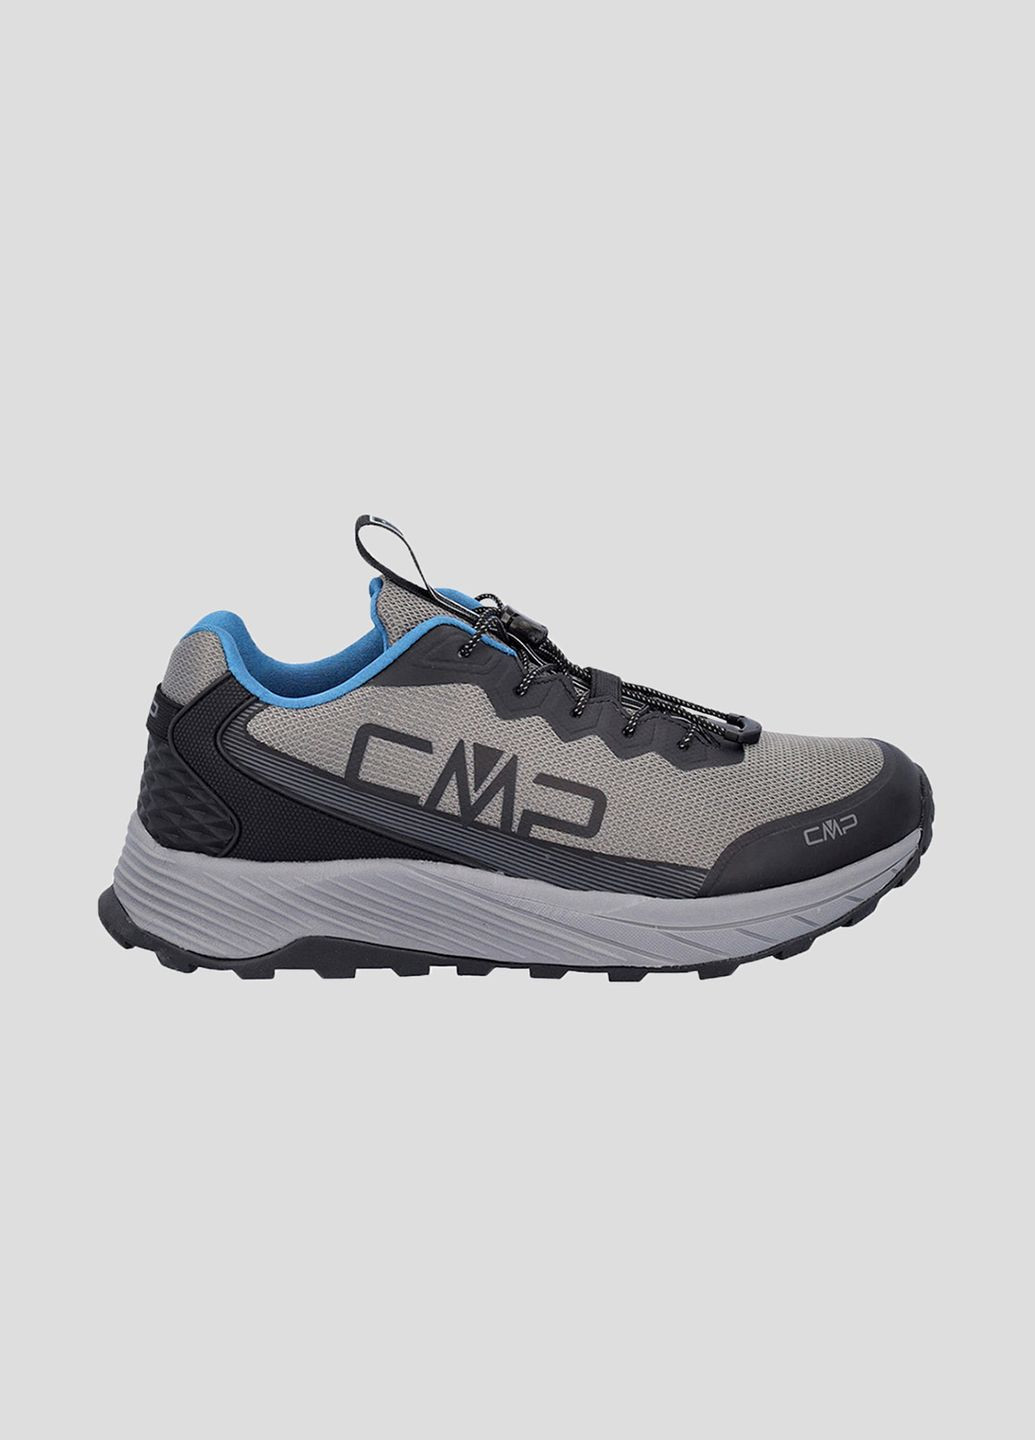 Серые демисезонные серые кроссовки phelyx multisport shoes для тренировок CMP